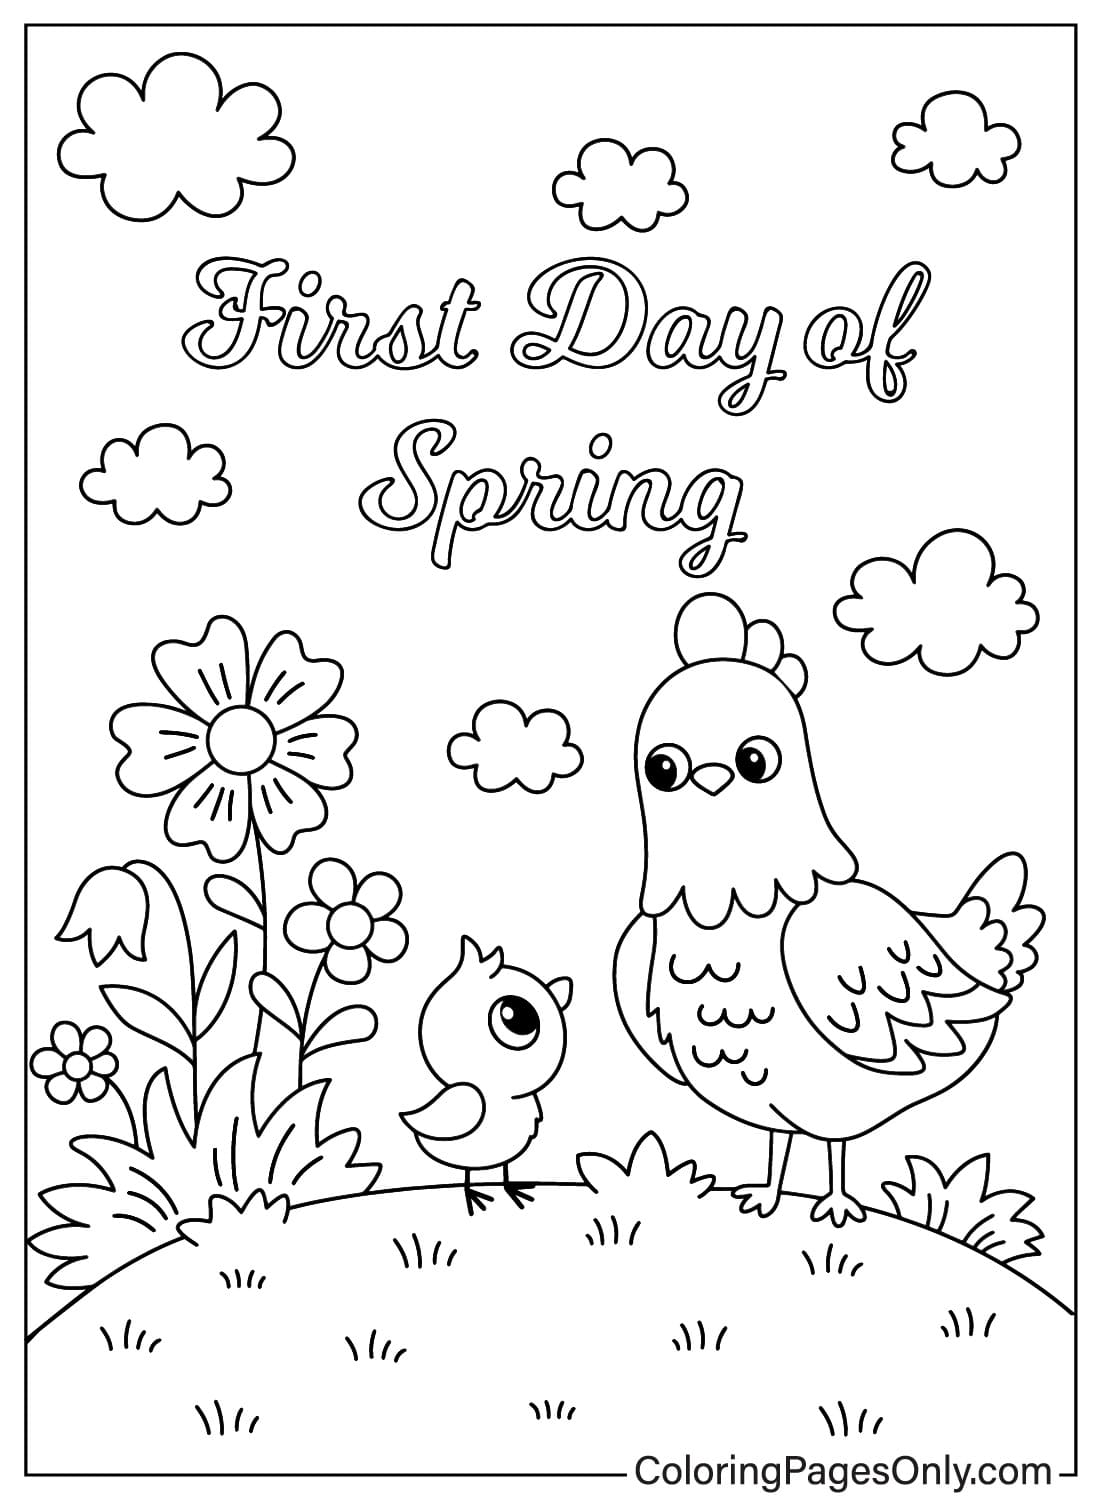 Página para colorear del primer día de primavera del pollo del primer día de primavera